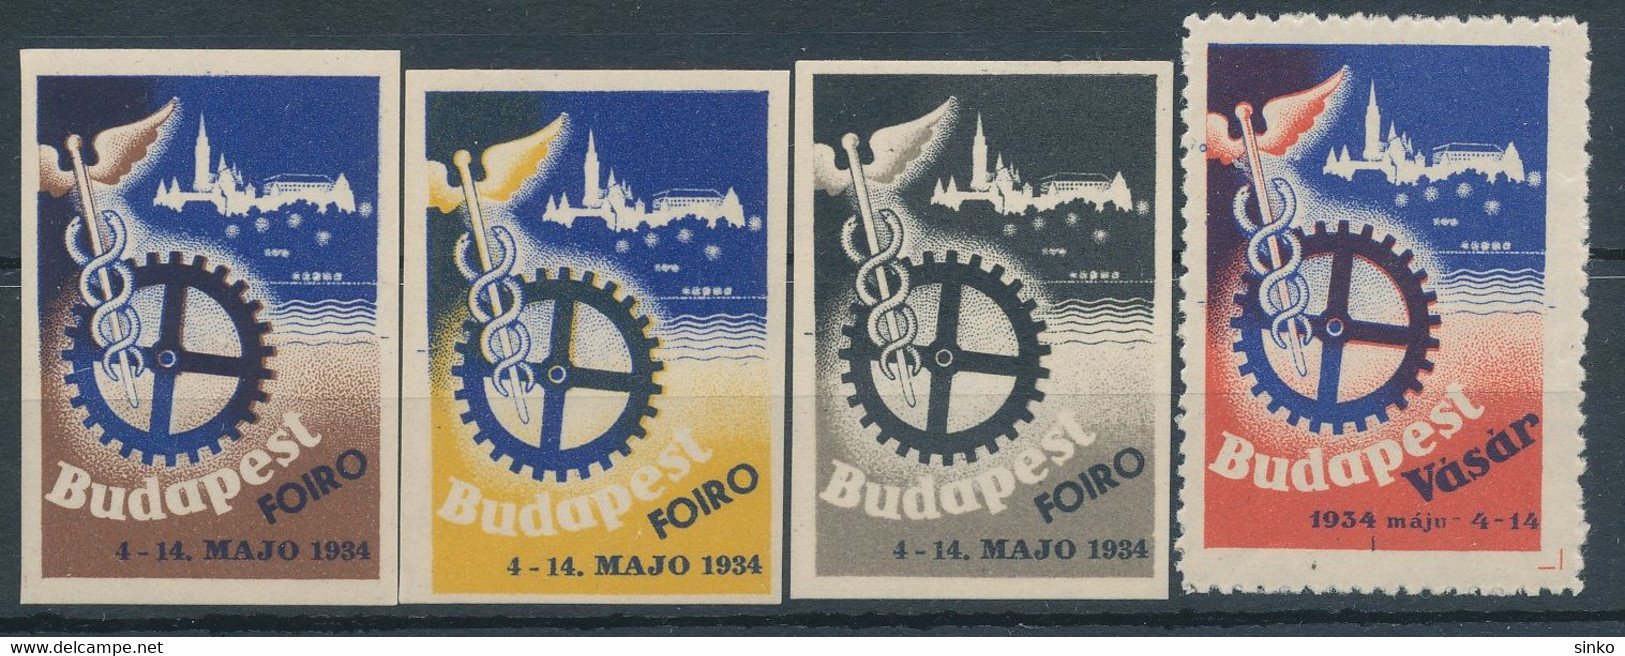 1934. Budapest Fair! - Souvenirbögen